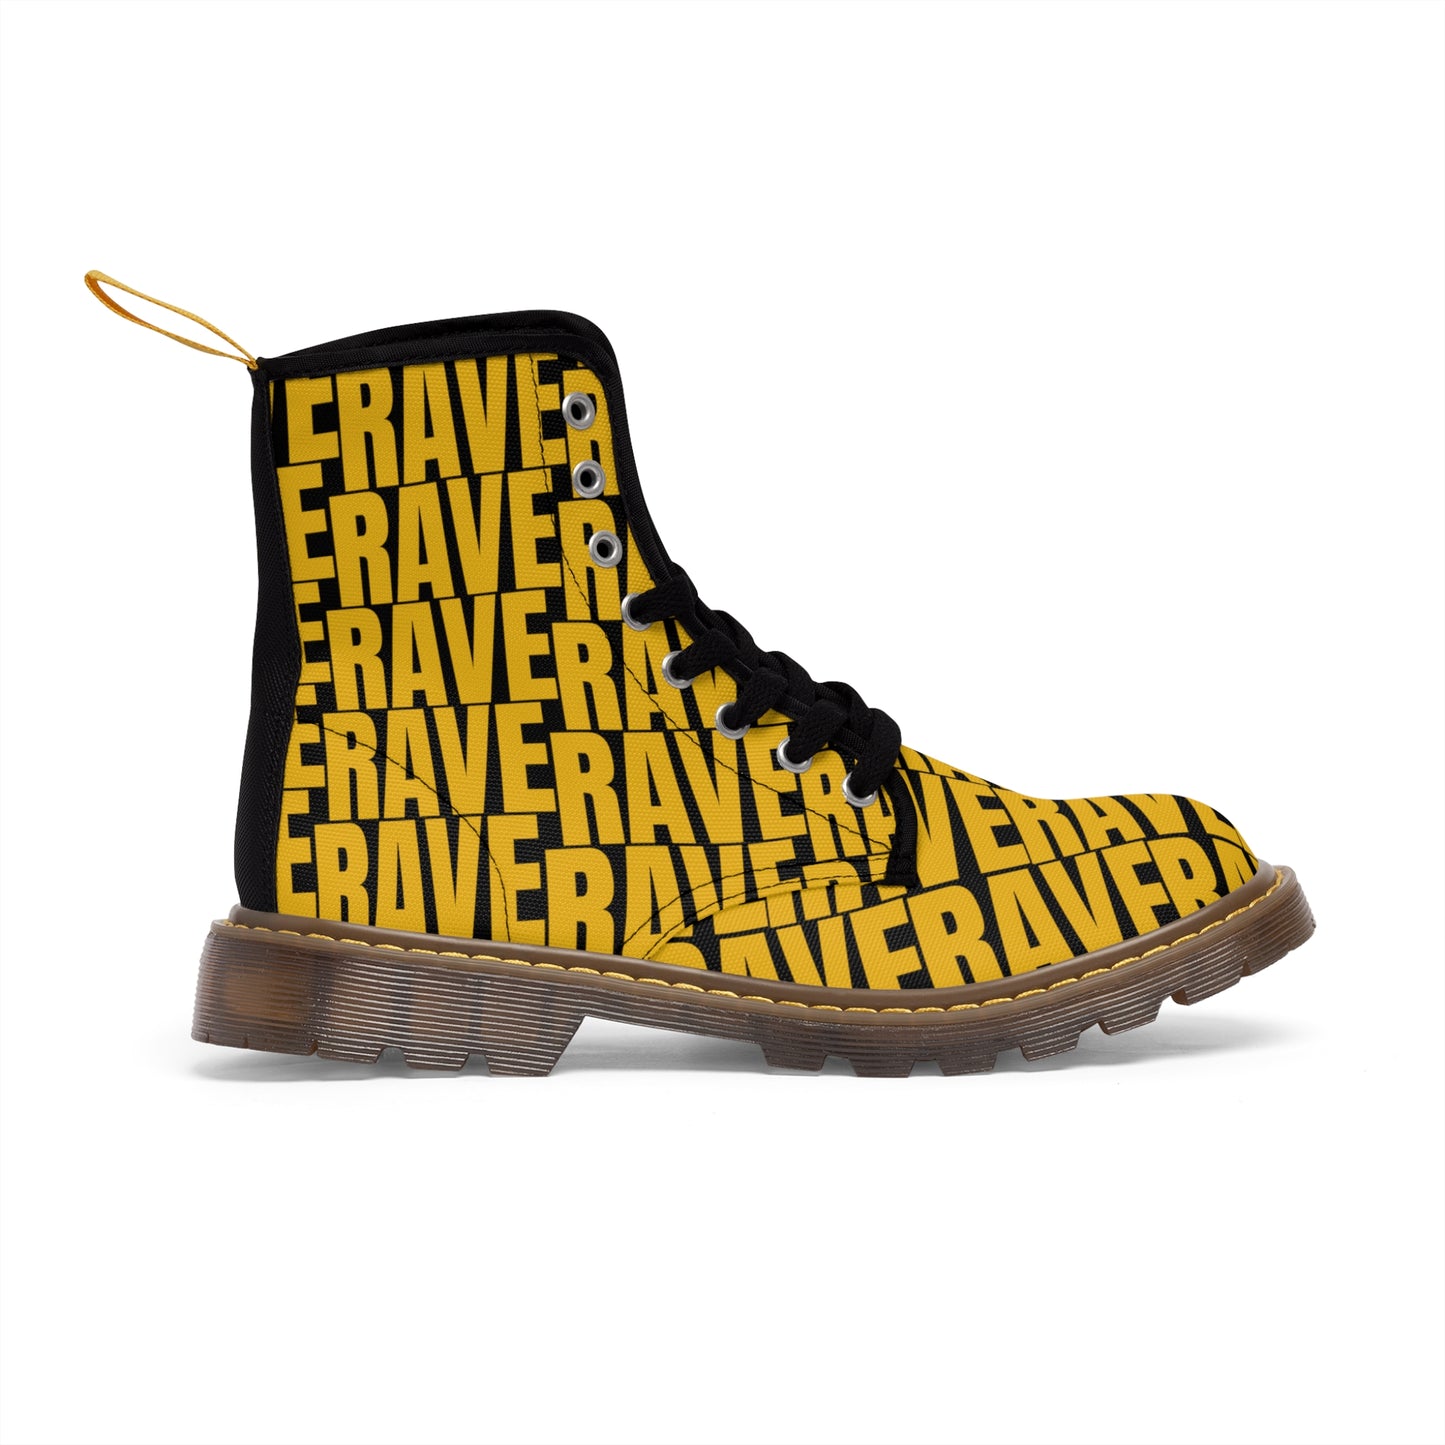 Rave / Raver - Men's Canvas Boots